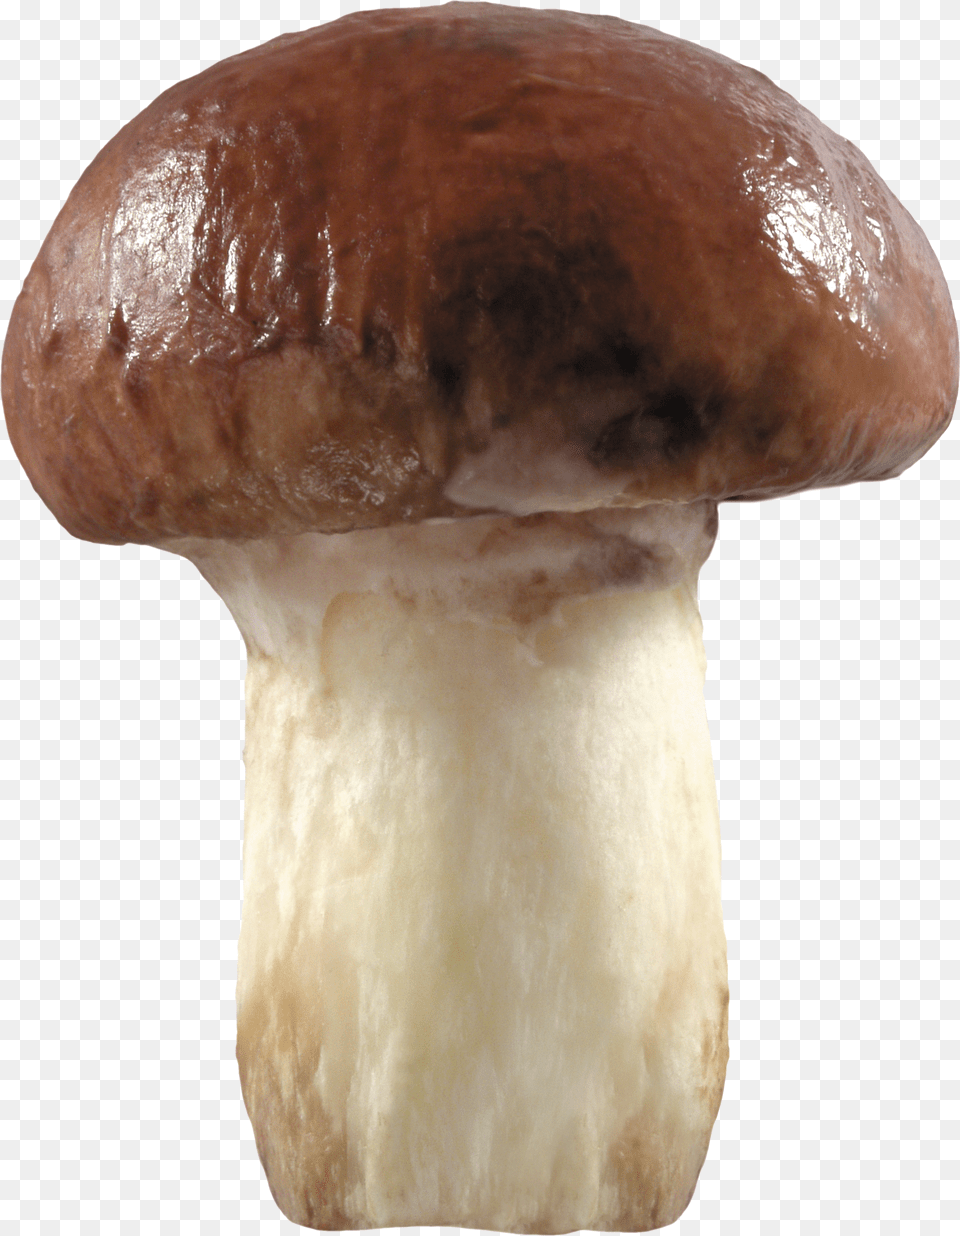 Mushroom Two Grib Png